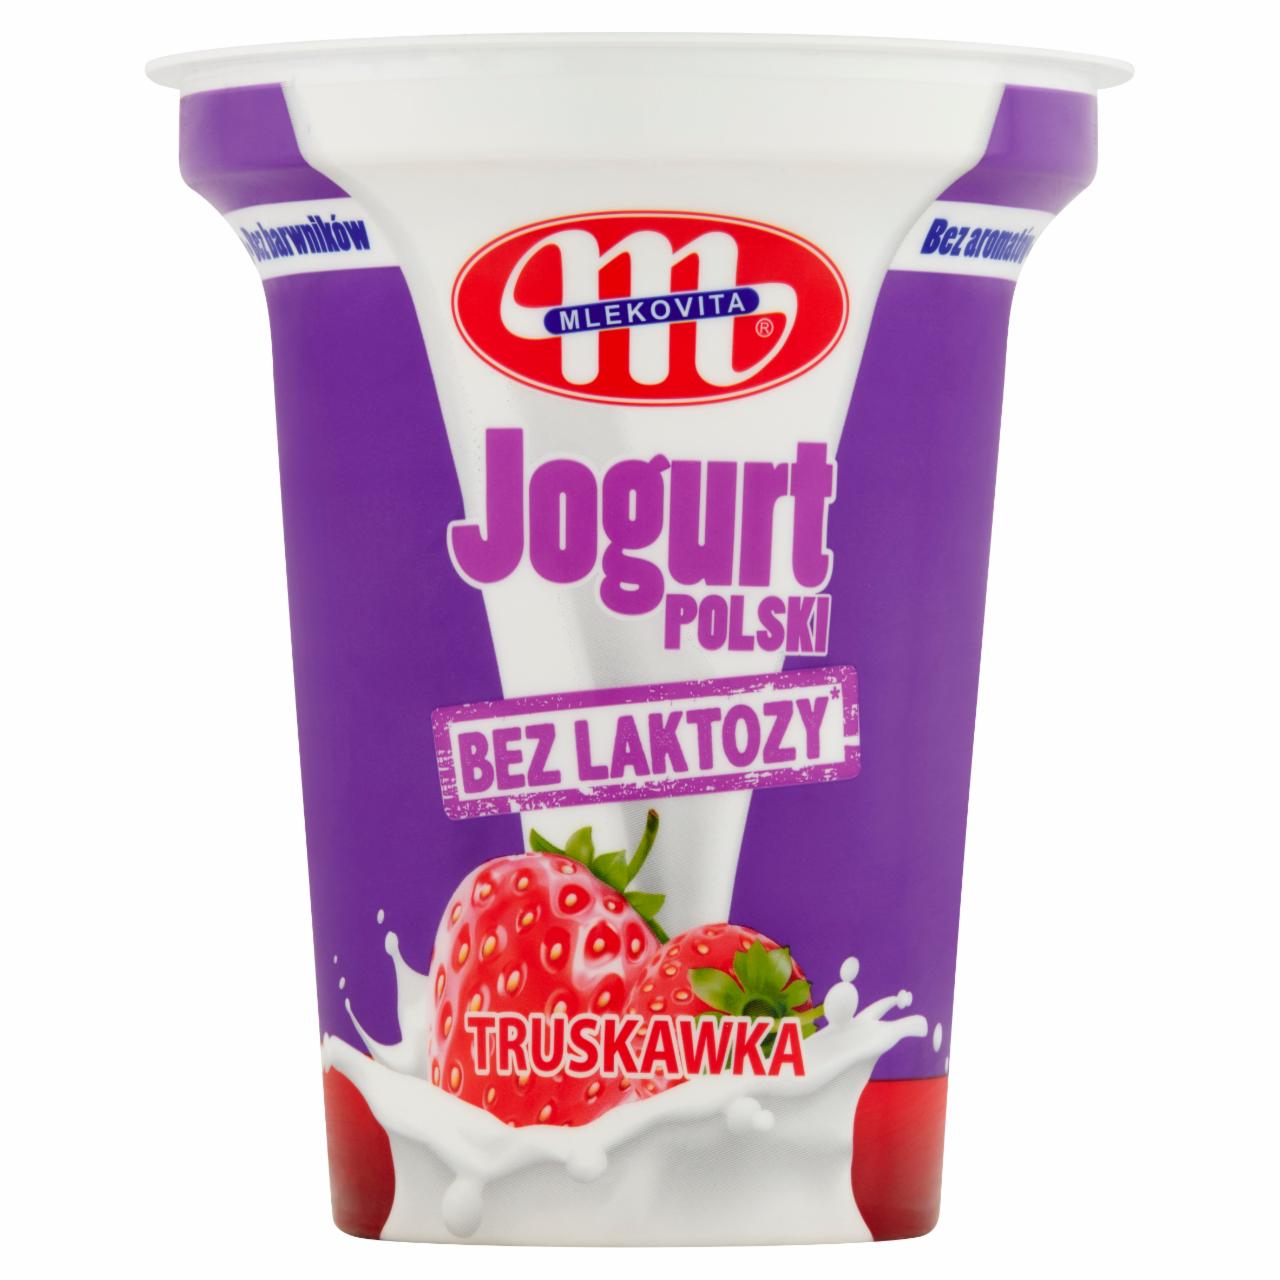 Zdjęcia - Jogurt Polski bez laktozy truskawka Mlekovita